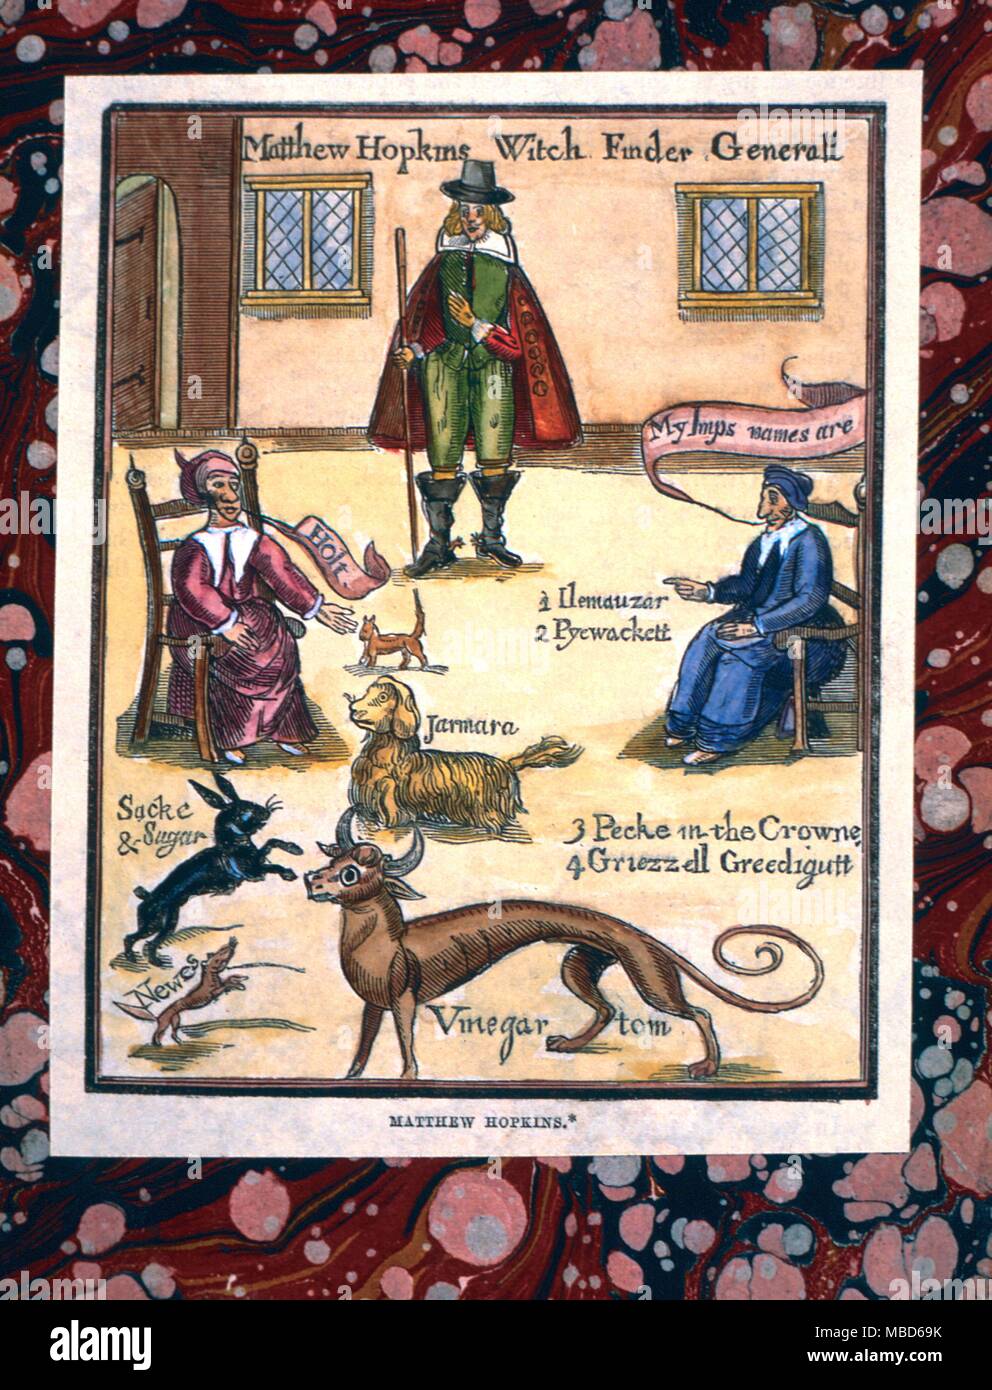 Animaux - lapin et chien familiers - frontispice de Matthieu Hopkin's Découverte des sorcières, 1647. Hopkins a été le soi-disant Witchfinder General, représenté ici avec deux de ses victimes, sorcière et entouré de ses lutins ou familiers. - © / Charles Walker frontispice à Hopkins de 'Découverte' Wiches (sic), 1647. Hopkins a été le soi-disant 'Witchfinder General' - il est représenté ici avec deux de ses victimes, et leur nom de Pim ou familiers Banque D'Images